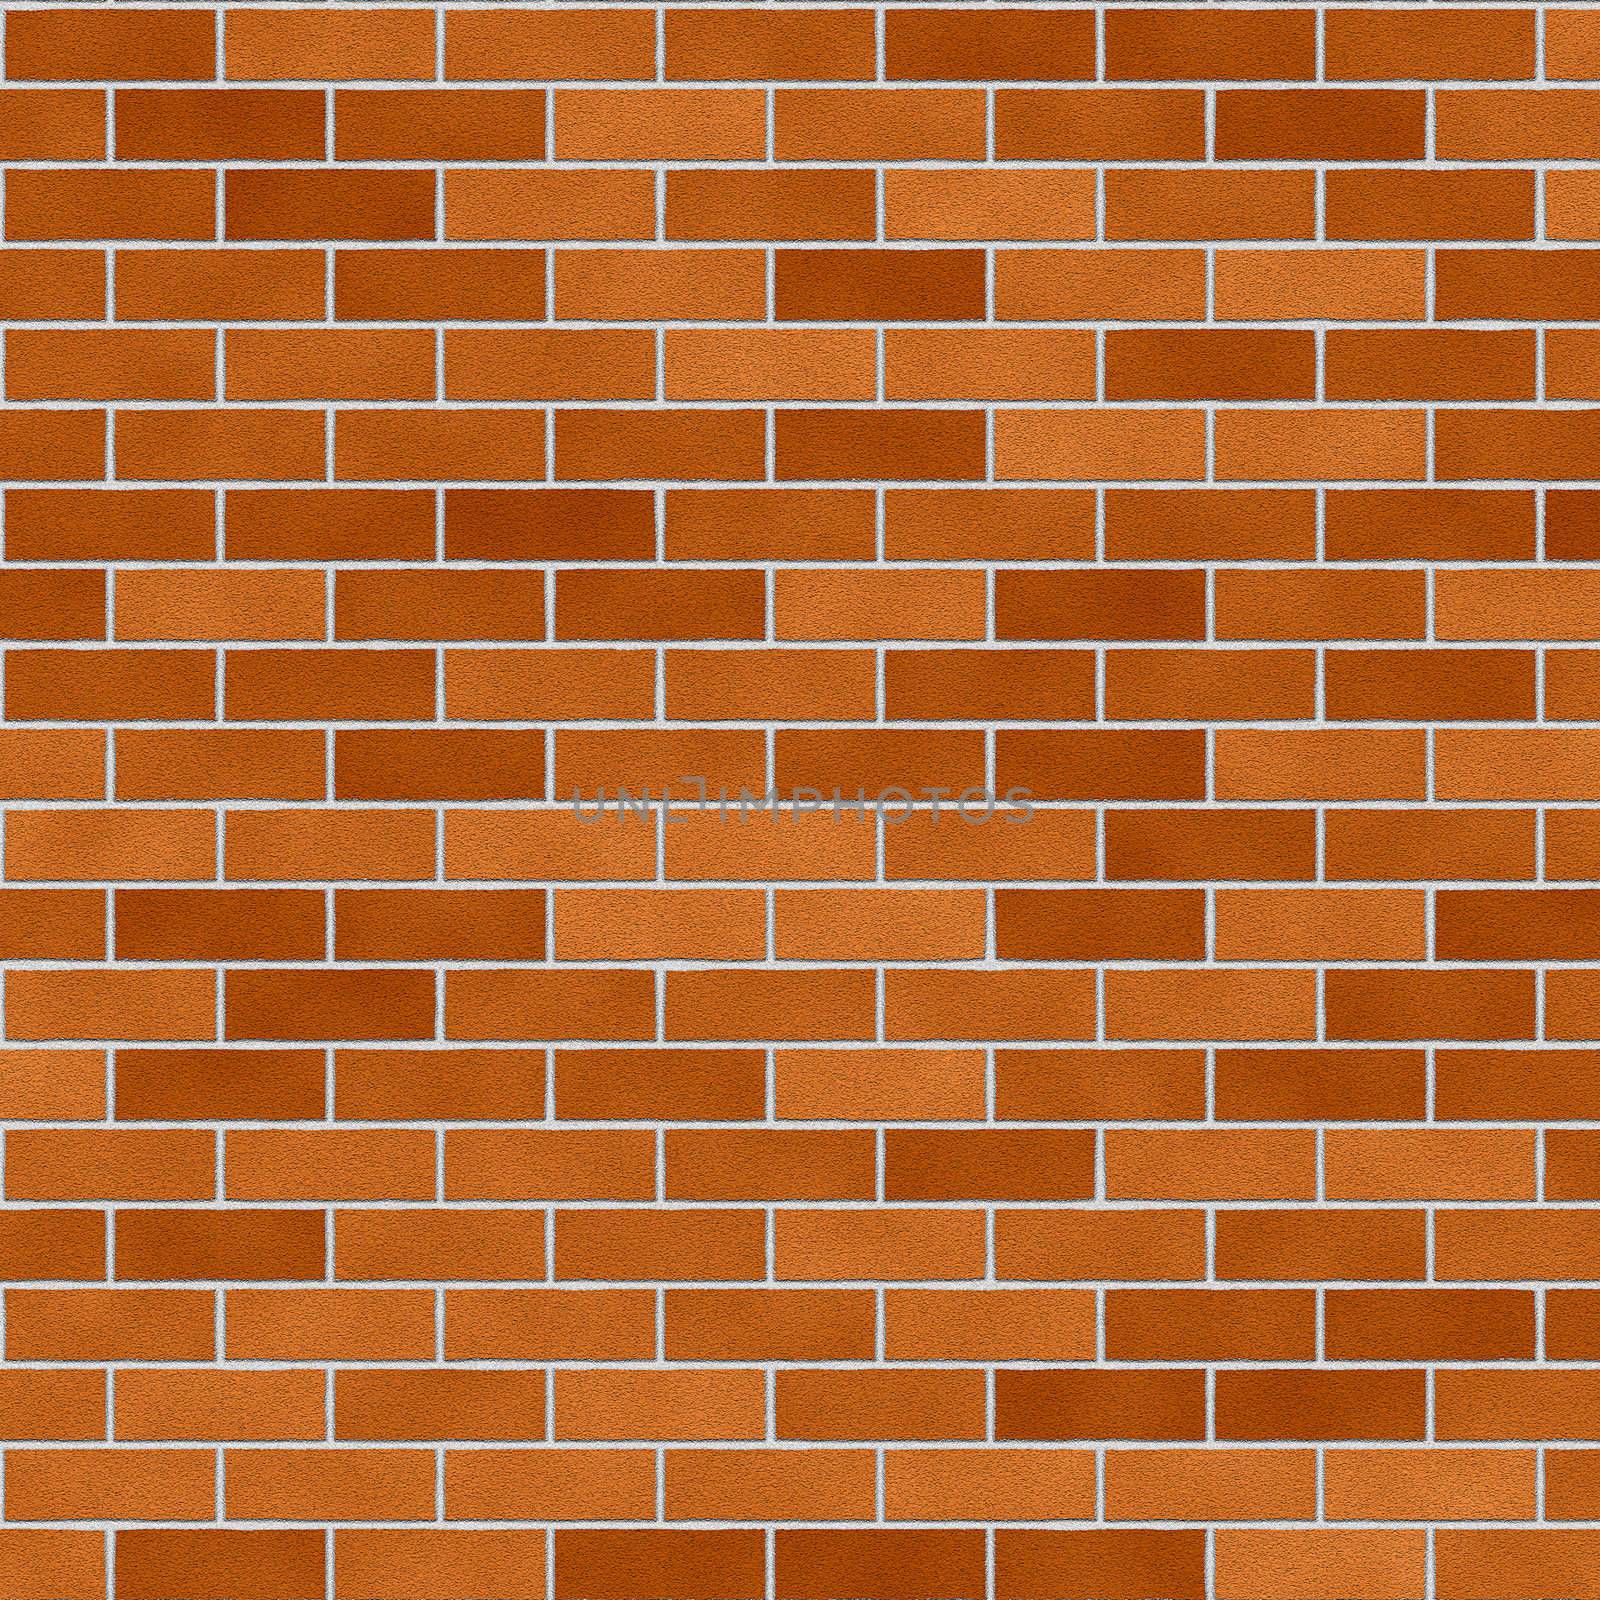 Bricks pattern texture in shades of orange